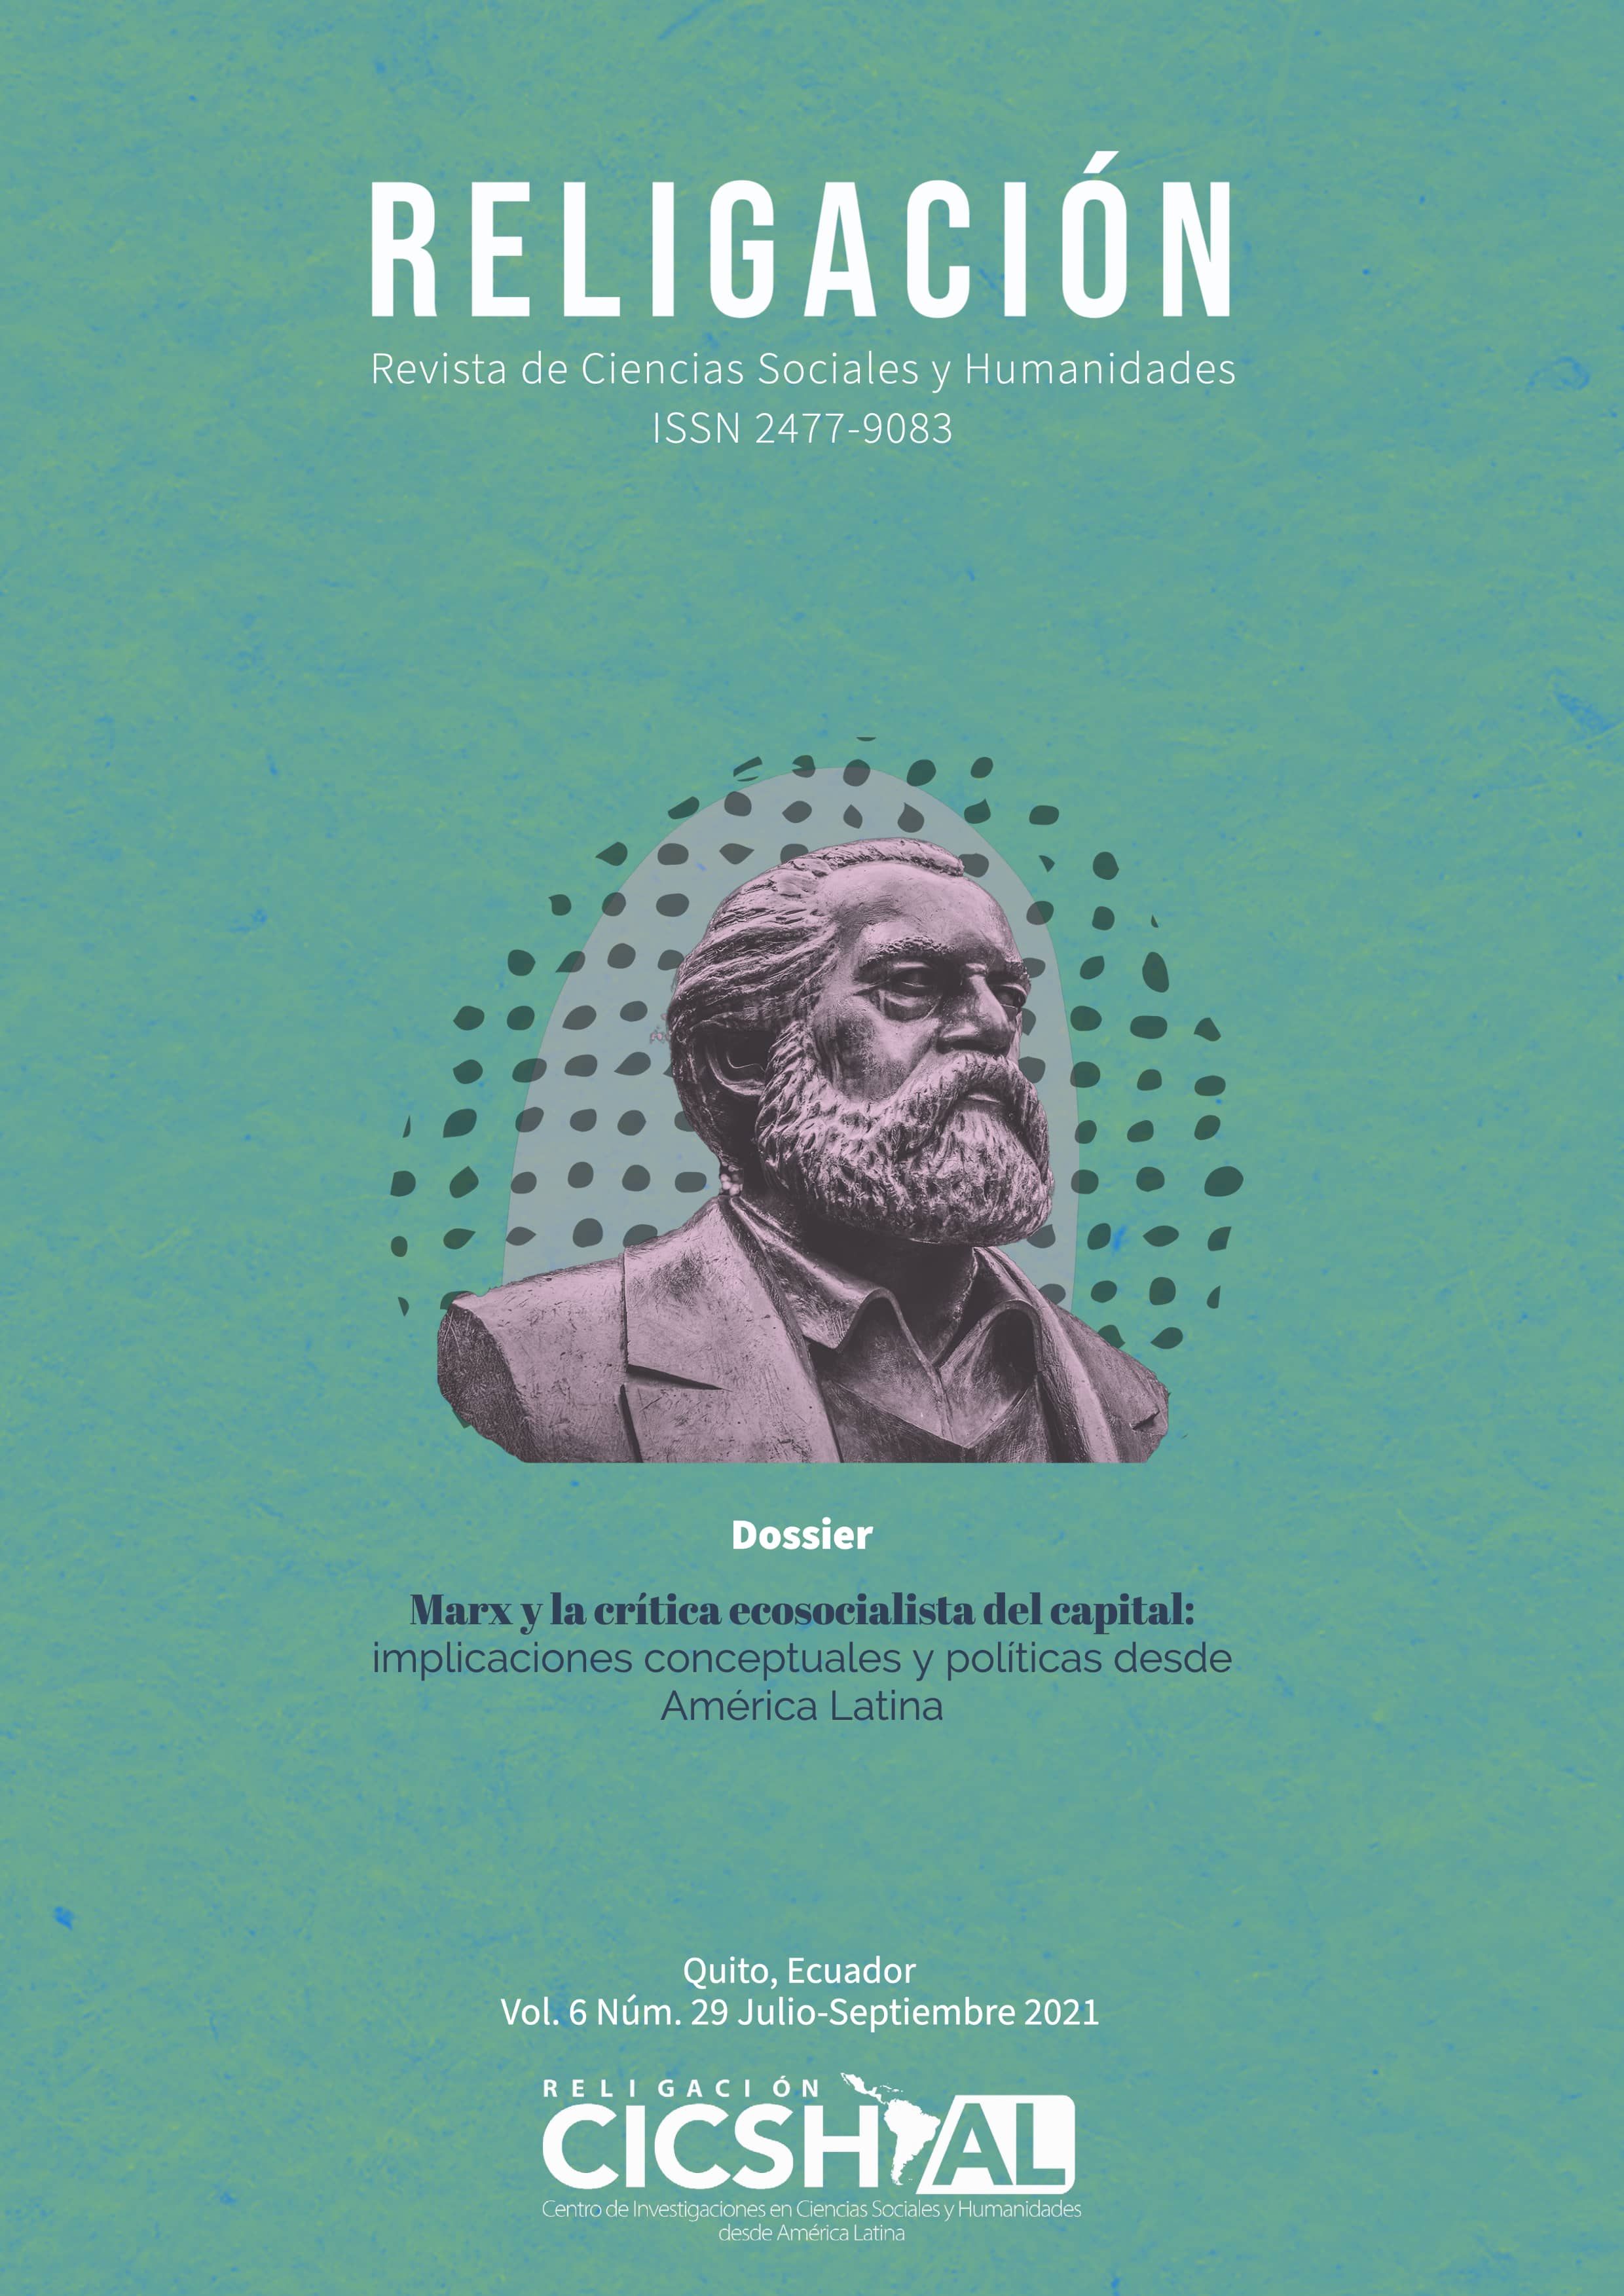 DOSSIER: Marx y la crítica ecosocialista del capital: implicaciones conceptuales y políticas desde América Latina